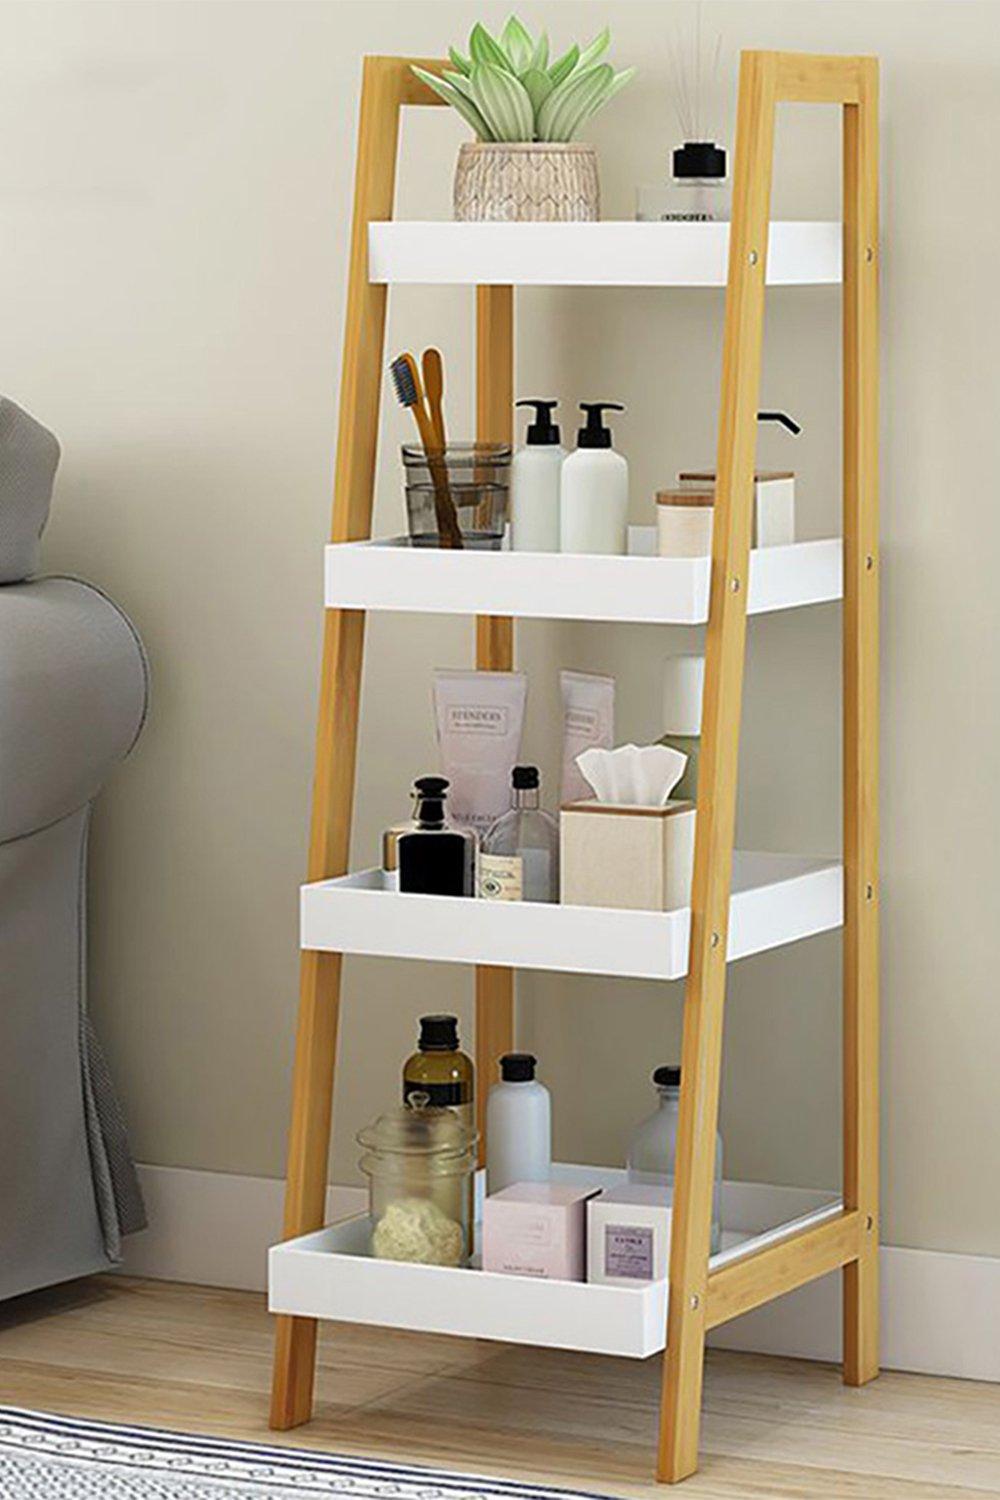 4-Tier Ladder Shelf Storage Organizer Freestanding Bathroom Shelves